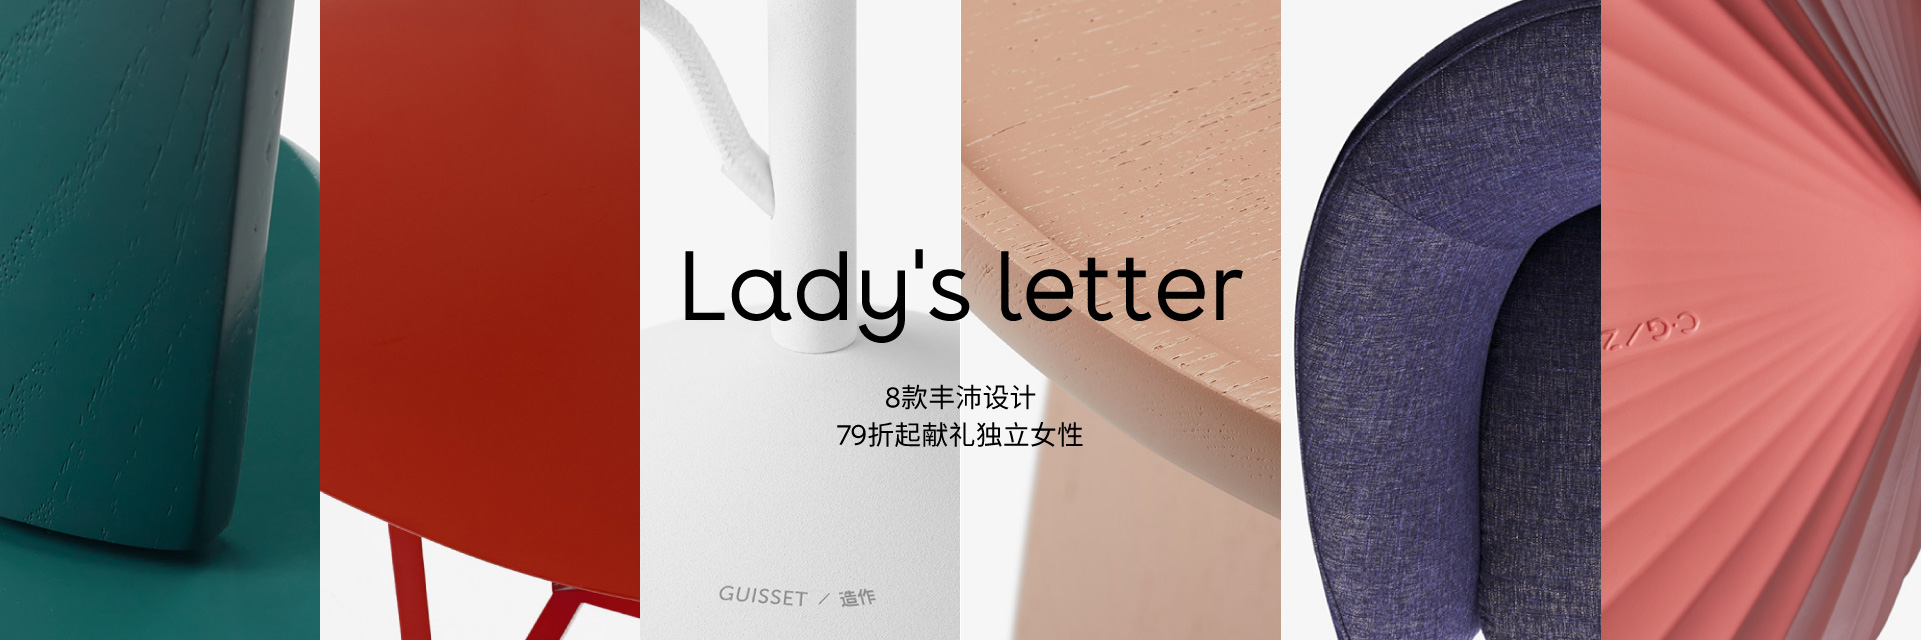 ladys letter